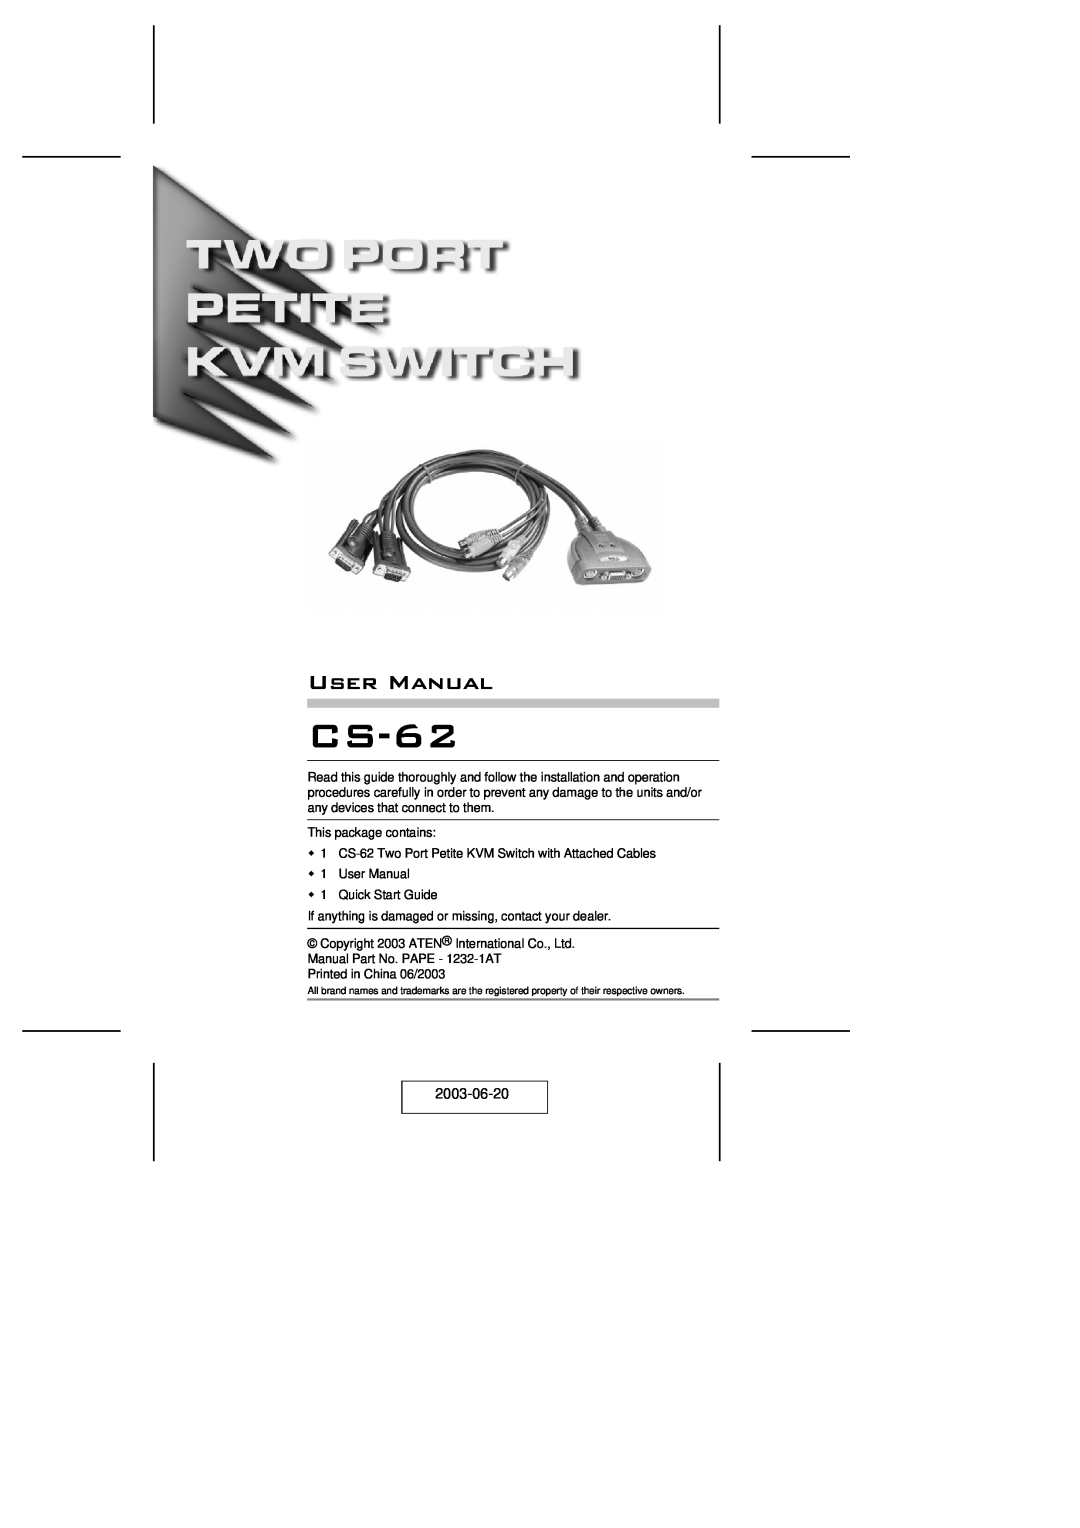 ATEN Technology KVM CS-62 user manual 2003-06-20 